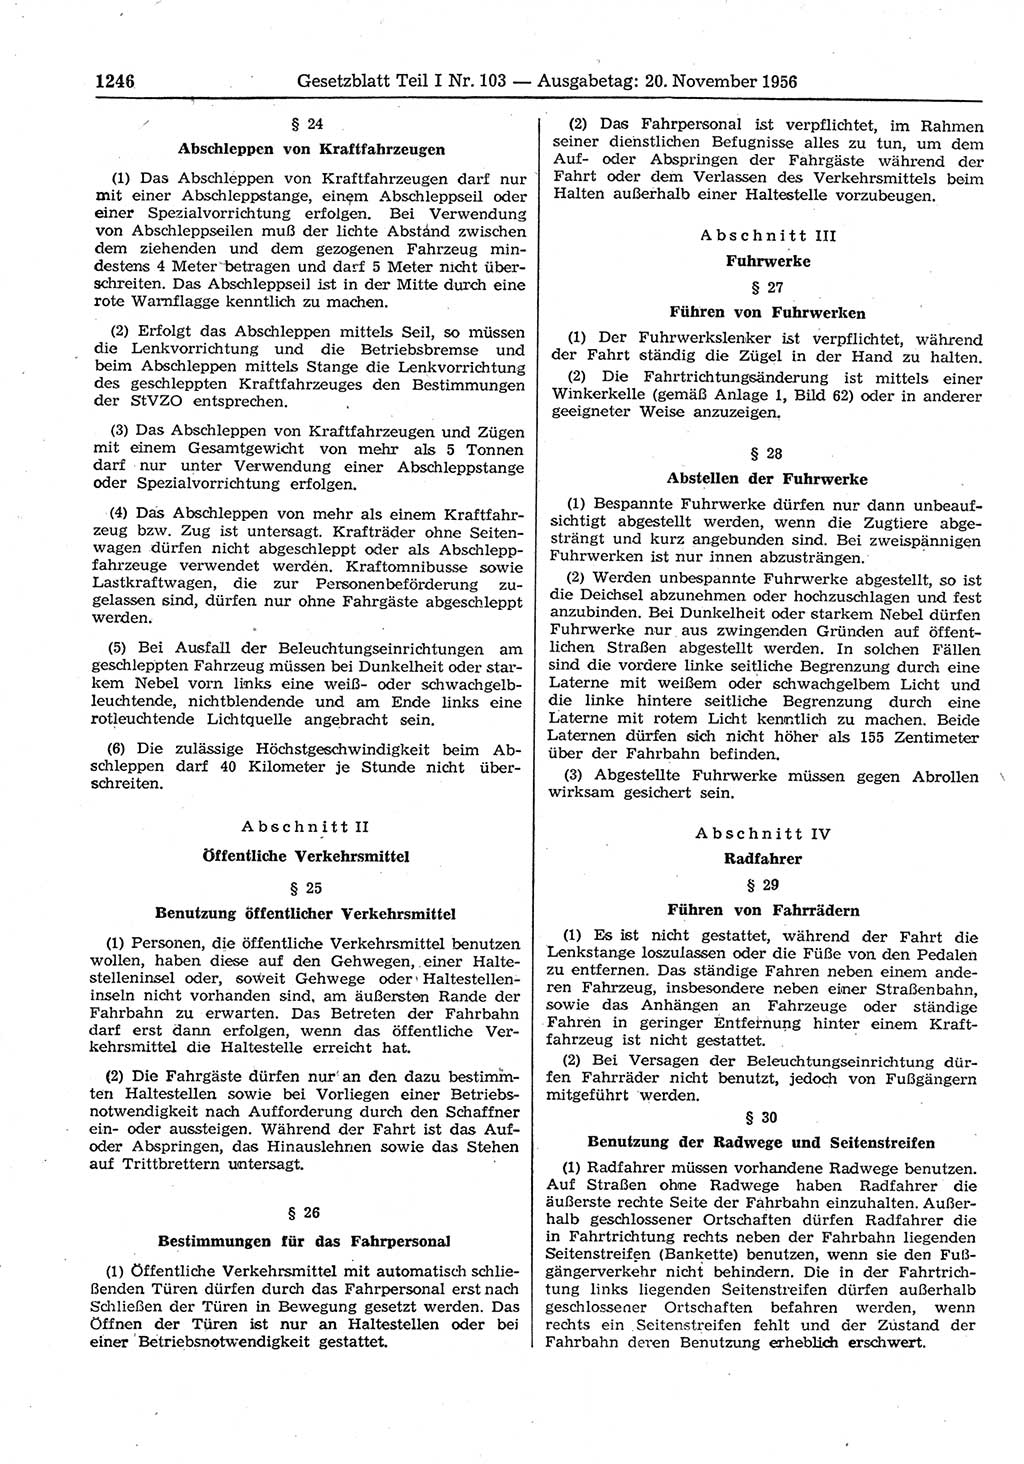 Gesetzblatt (GBl.) der Deutschen Demokratischen Republik (DDR) Teil Ⅰ 1956, Seite 1246 (GBl. DDR Ⅰ 1956, S. 1246)